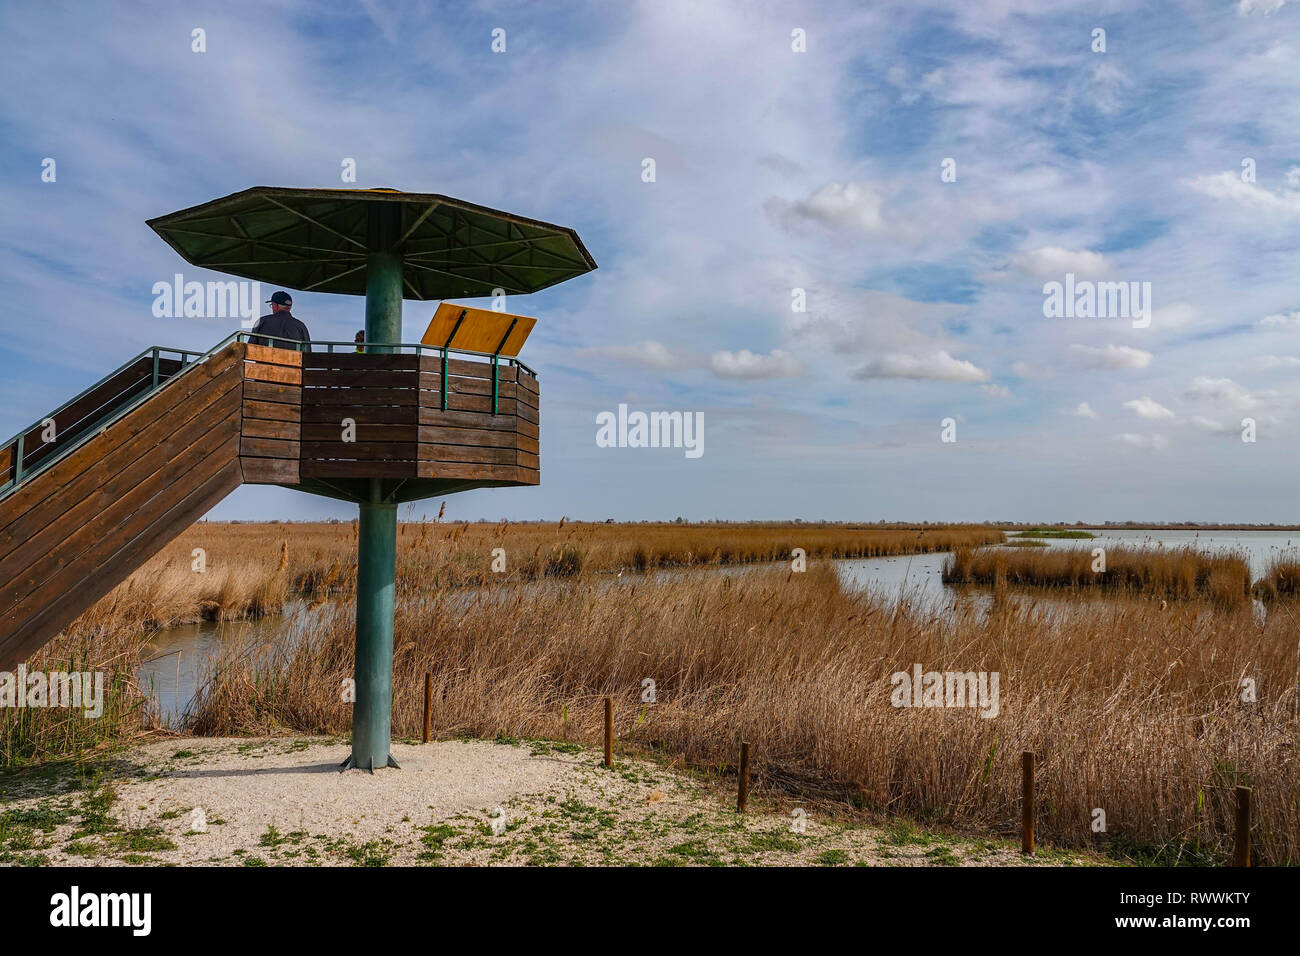 Vogel mit Sonnenschirm verstecken, und weiten, offenen Flächen, Seen und Schilfflächen, das Ebro-delta Naturschutzgebiet, in der Nähe von Amposta, Katalonien, Spanien Stockfoto